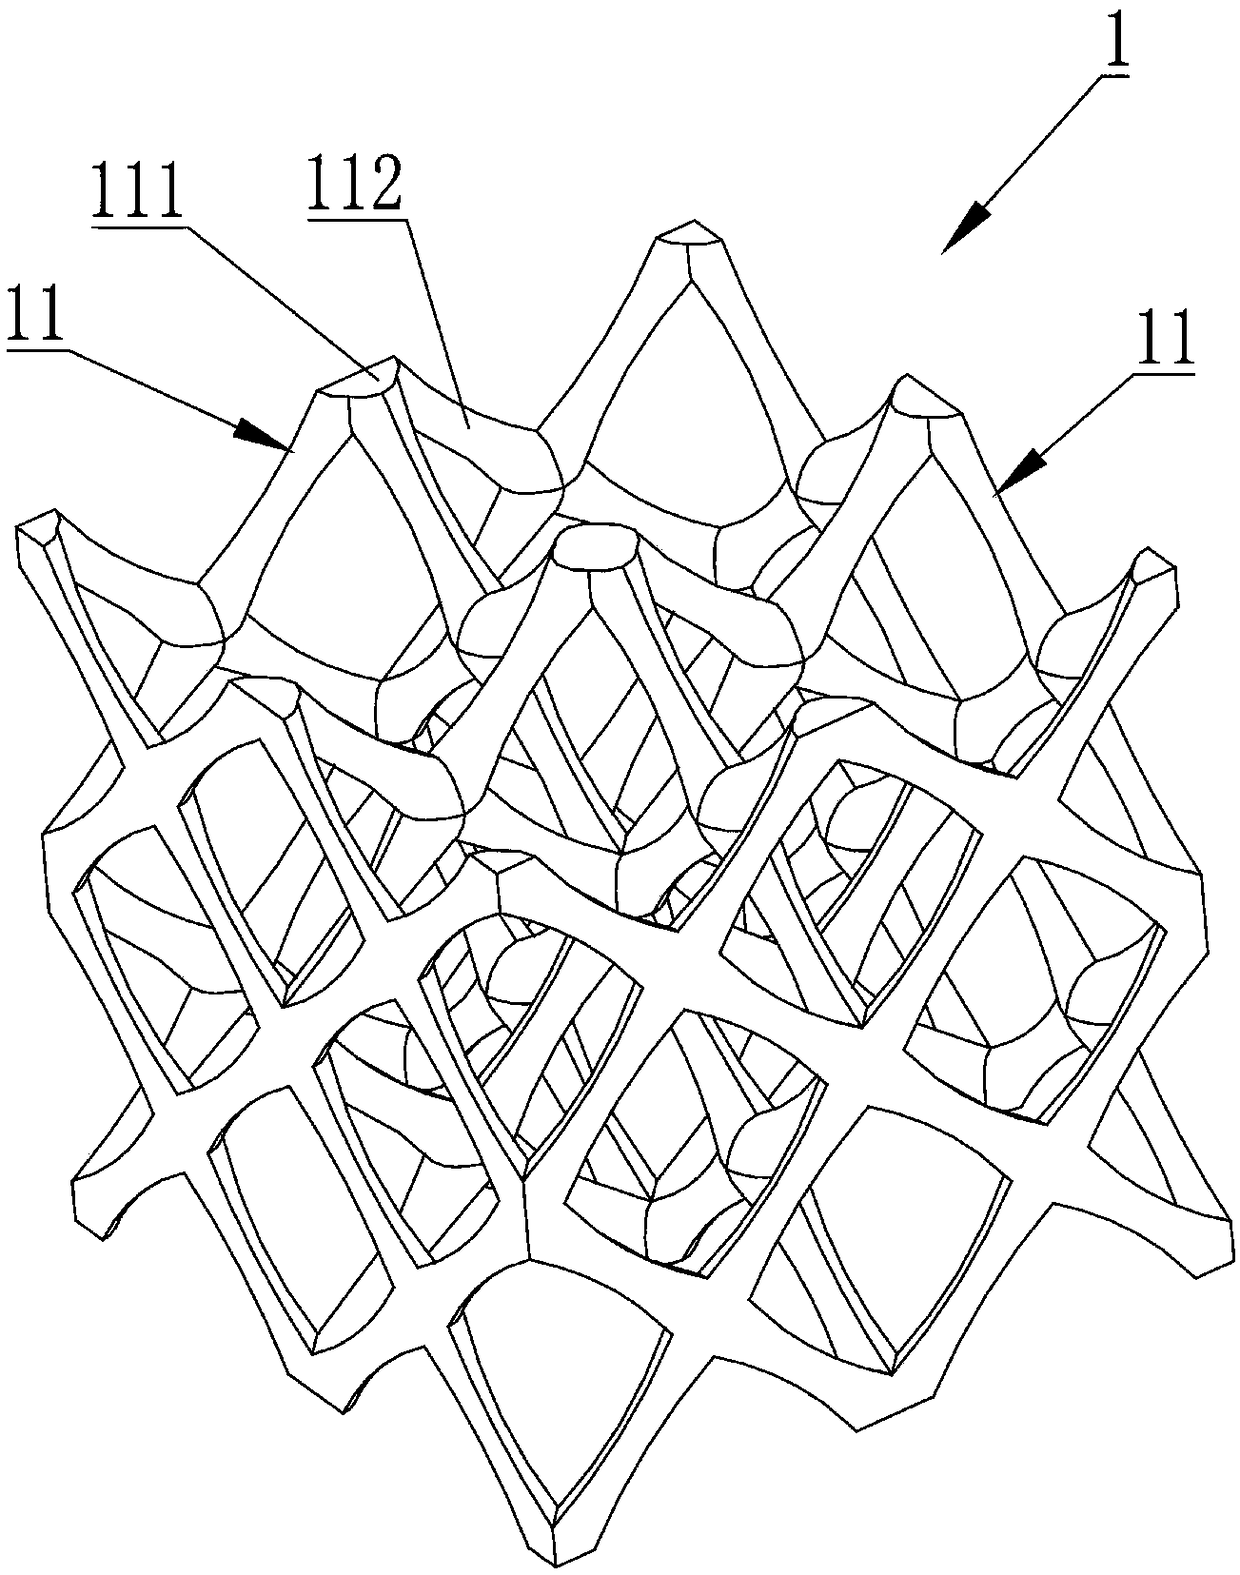 Lattice structure and lattice part